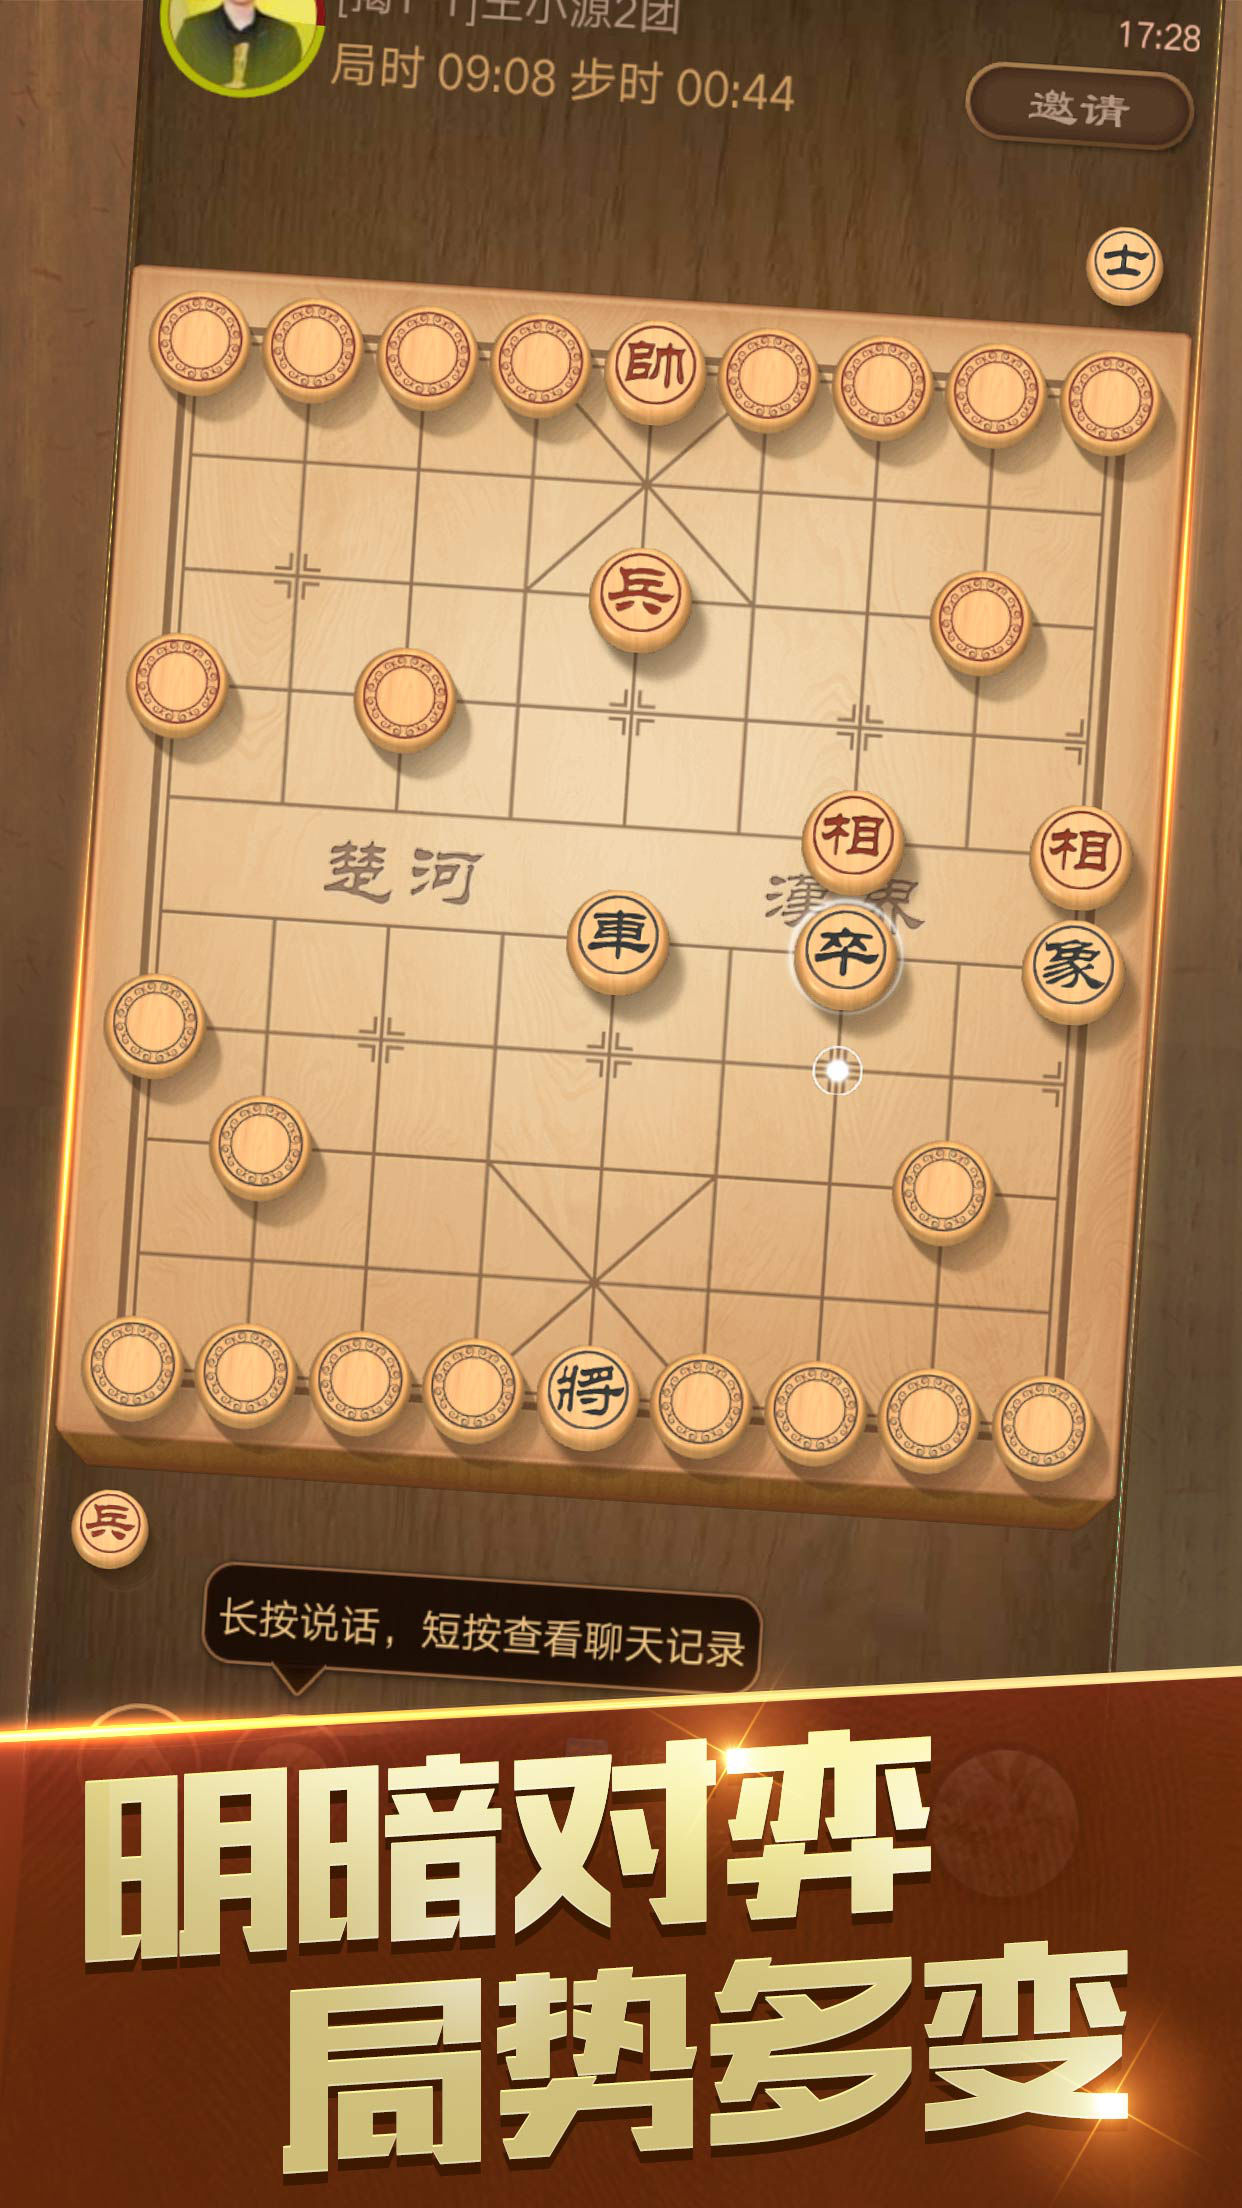 天天象棋iPhone版 V3.0.1.4